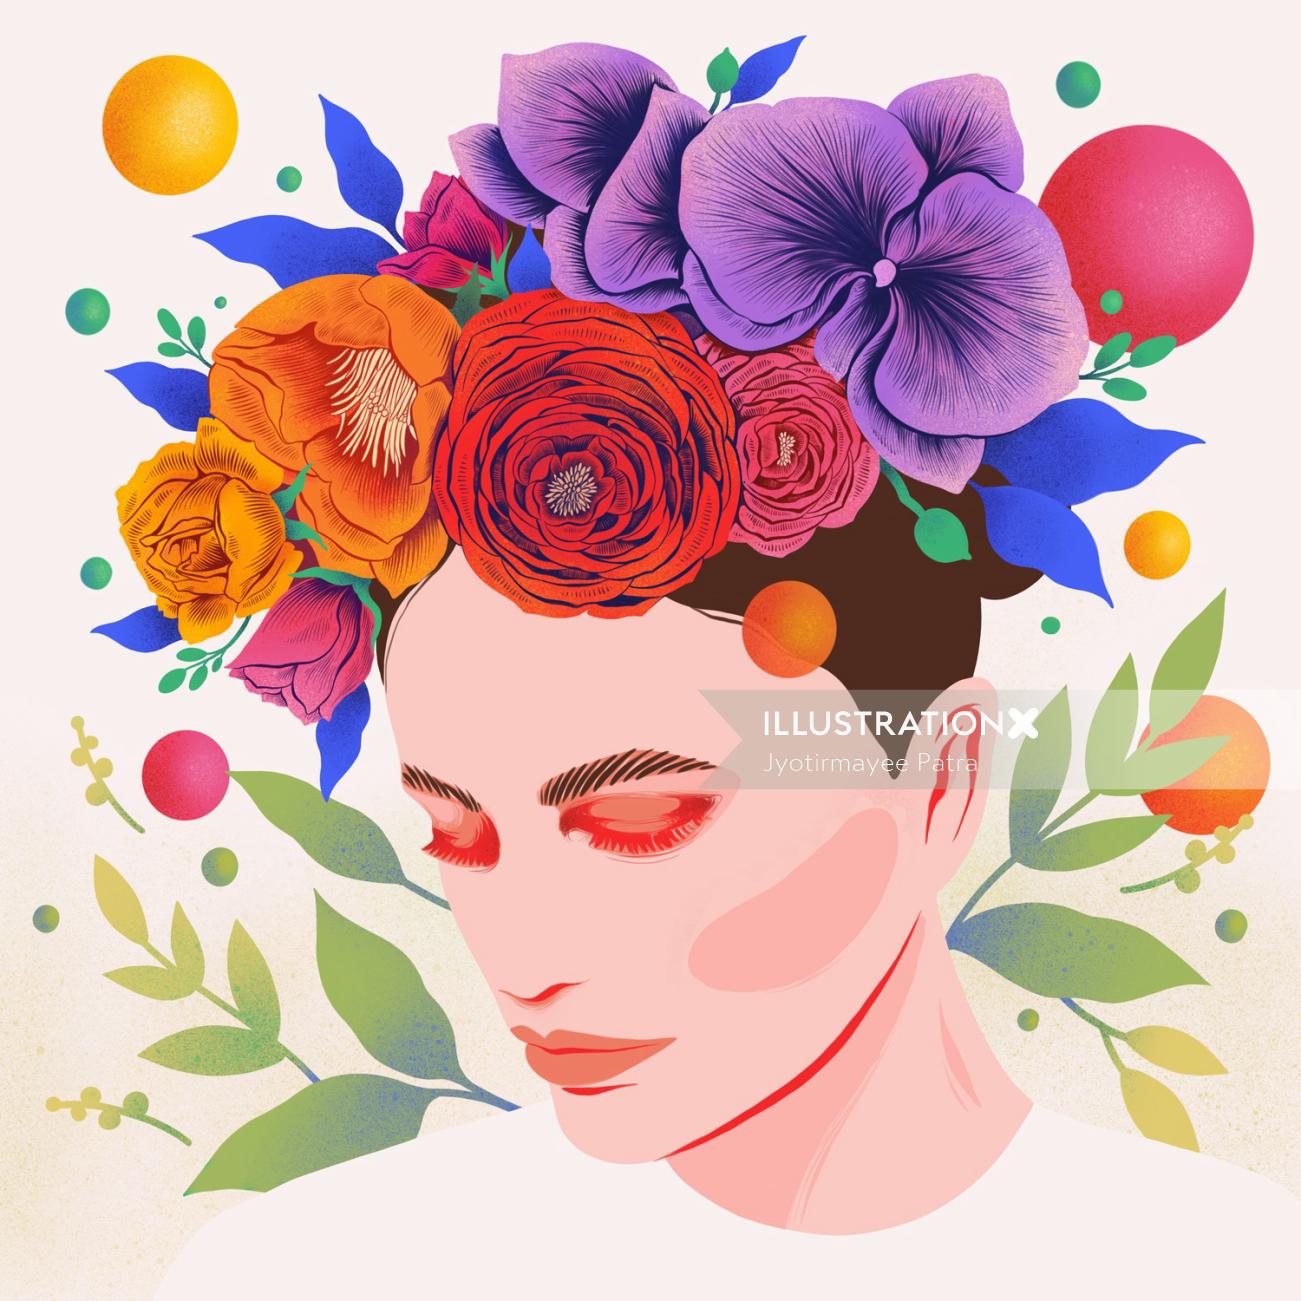 Ilustración gráfica de corona floral con colores vibrantes y caprichosa